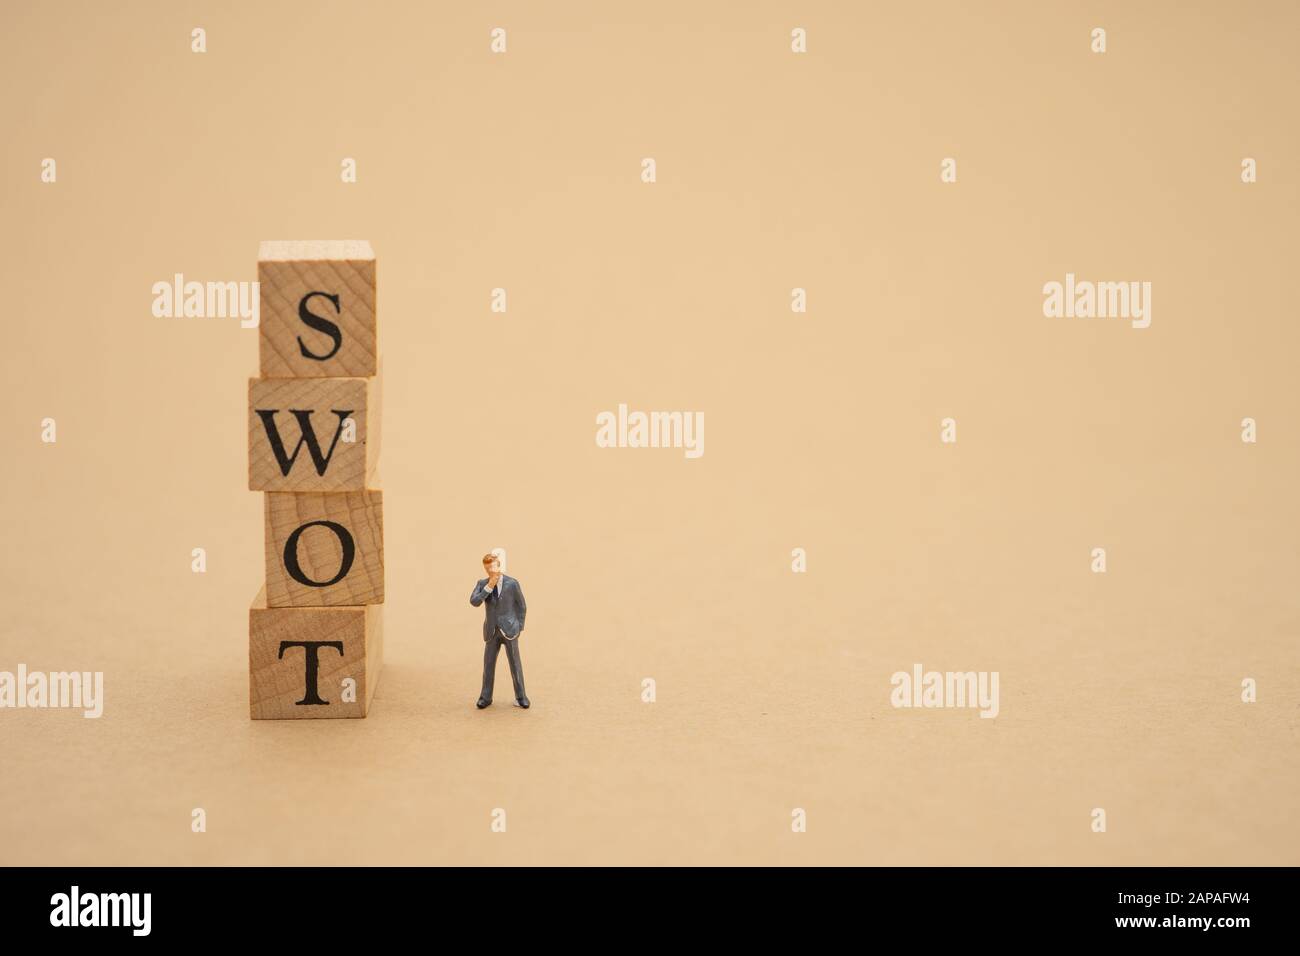 Miniatur-Leute Geschäftsleute, die mit dem Holzwort SWOT stehen, verwenden als Hintergrund-Geschäftskonzept und Finanzkonzept mit Kopierraum für Ihren Text oder Stockfoto